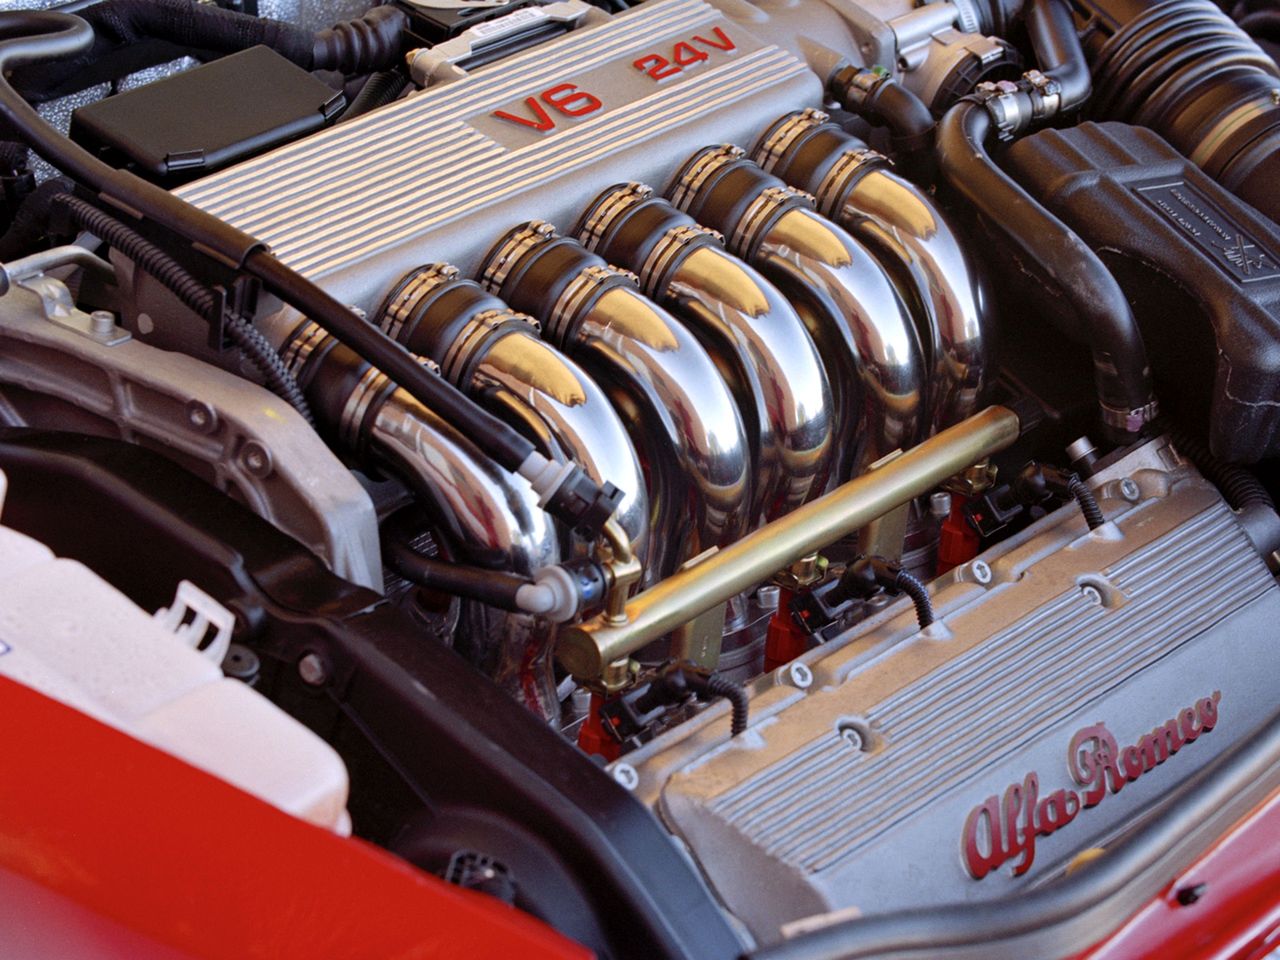 Silnik V6 Busso to jedna z najwspanialszych jednostek napędowych oferowanych po roku 2000, ale w przypadku zakupu auta z wyeksploatowanym silnikiem, może to doprowadzić właściciela do rozpaczy. Zwłaszcza finansowej.